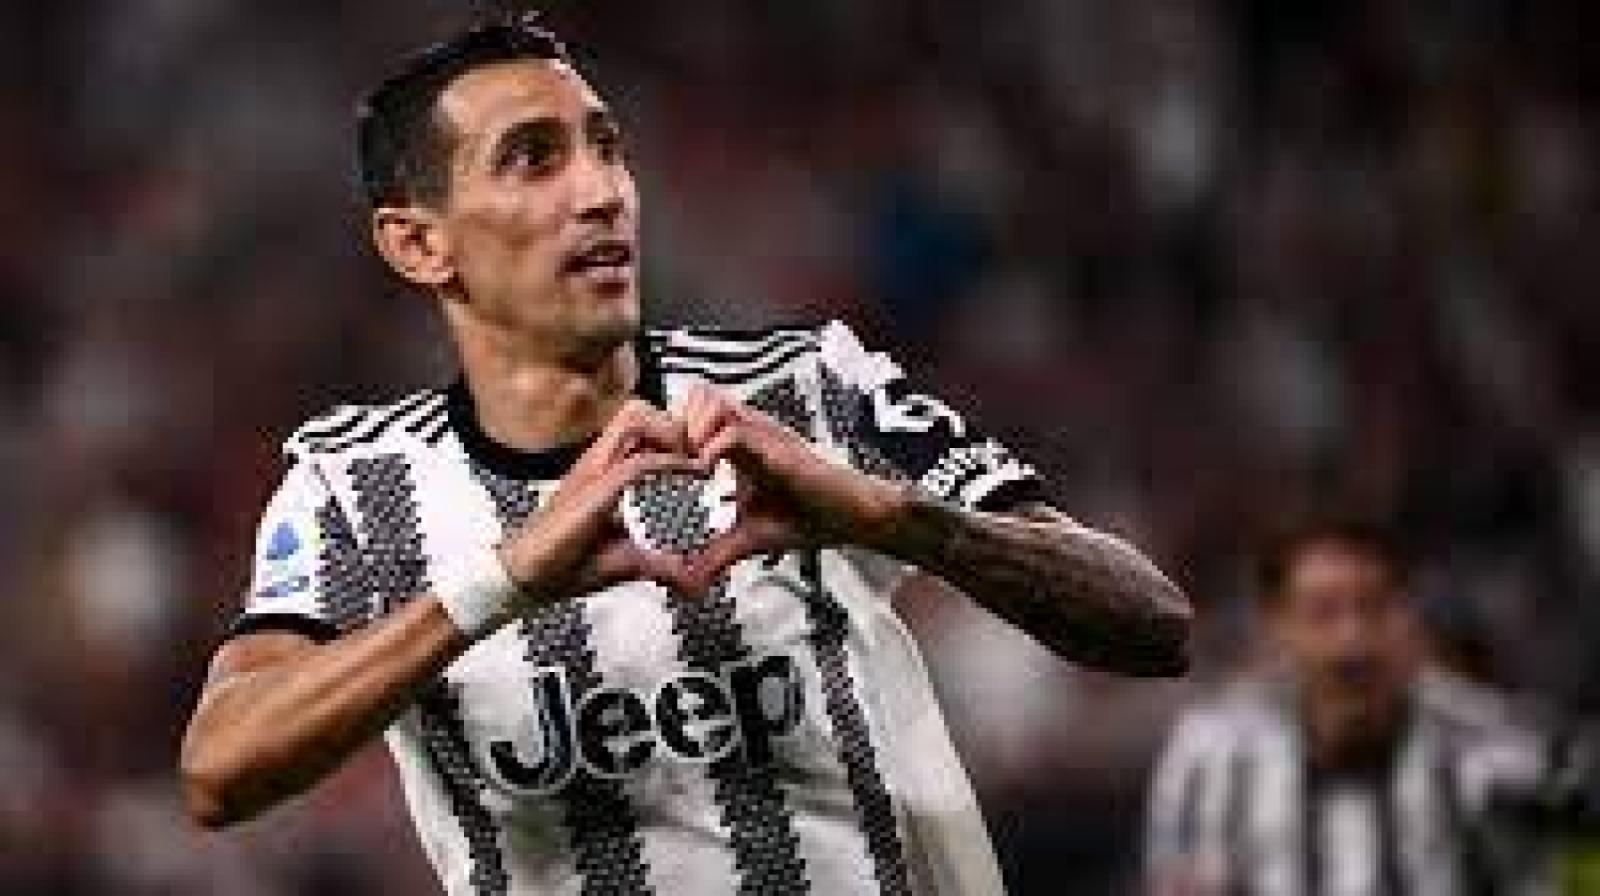 Imagen Di María: 8 goles luego de Qatar y adiós a Juventus. ¿Dónde jugará?